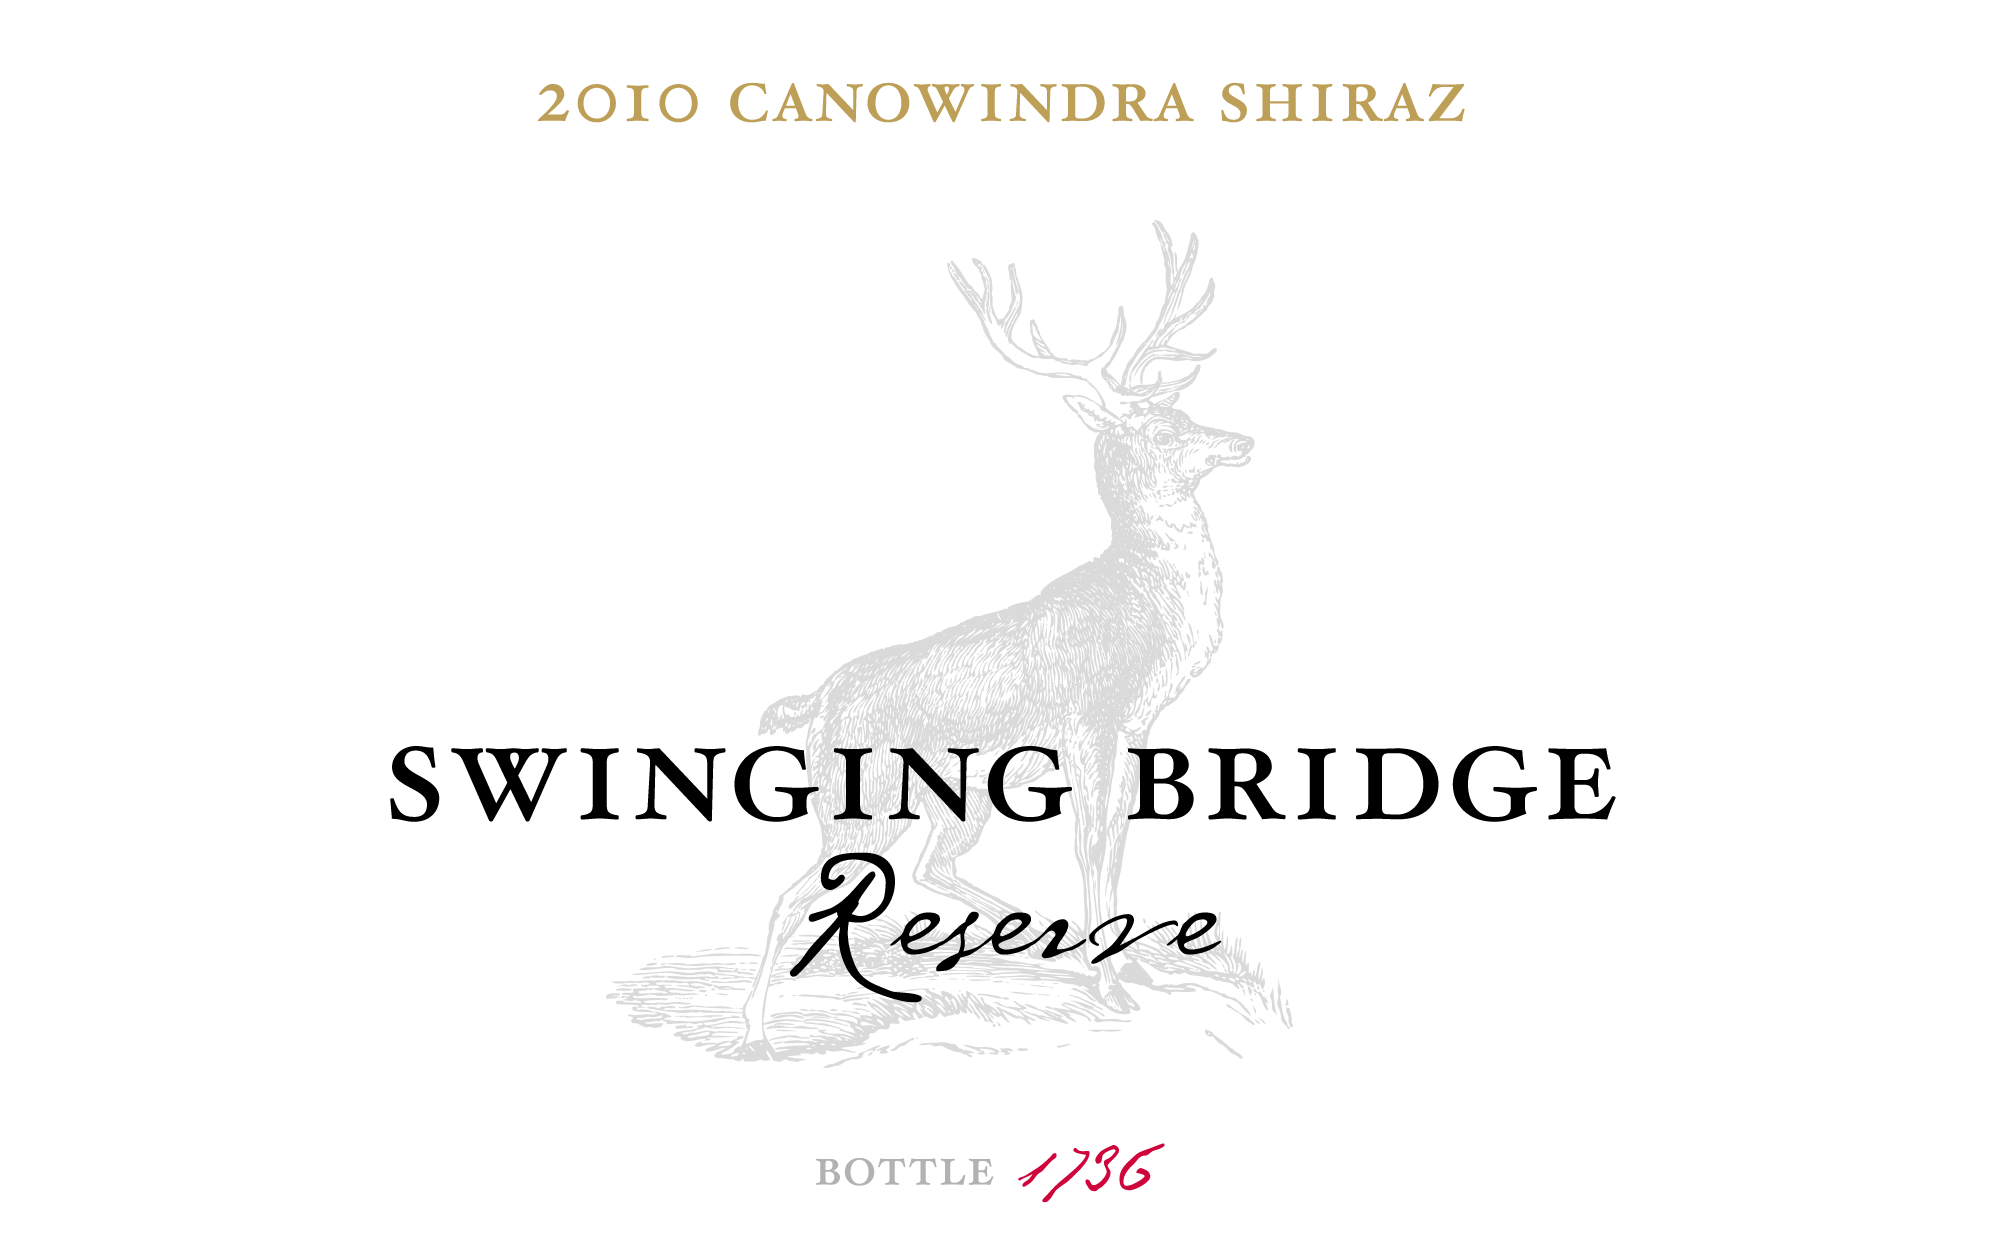 Swinging Bridge Reserve Wine Label Design